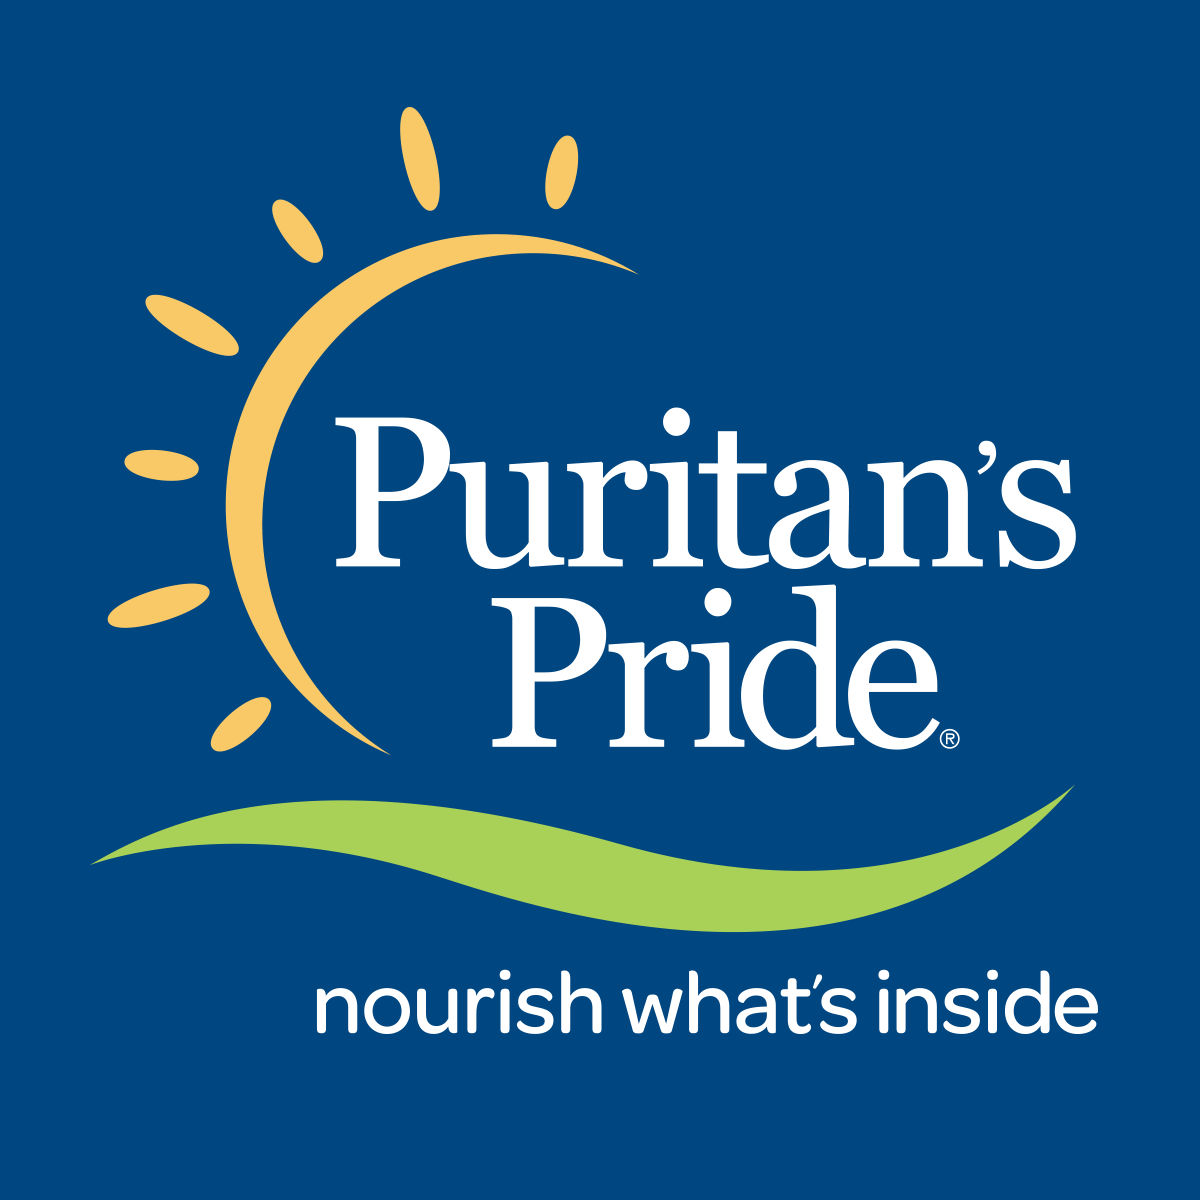 Puritan's Pride 2018 Black Friday Ad Frugal Buzz